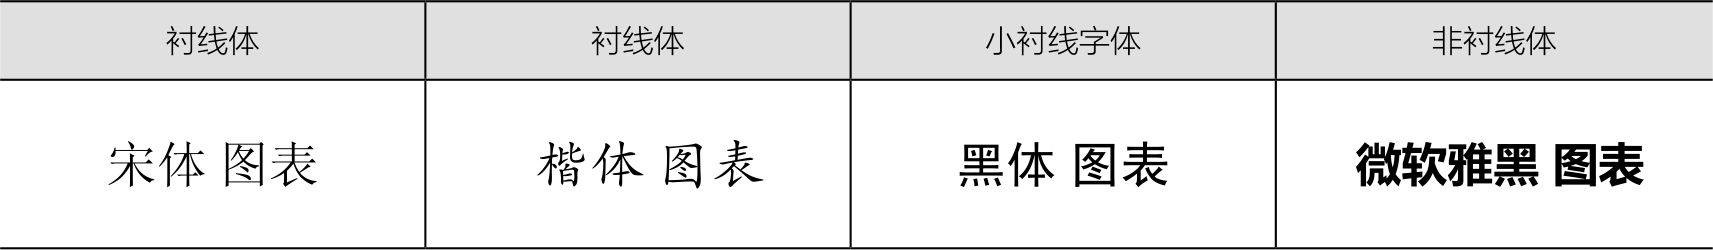 四种常见中文字体比较